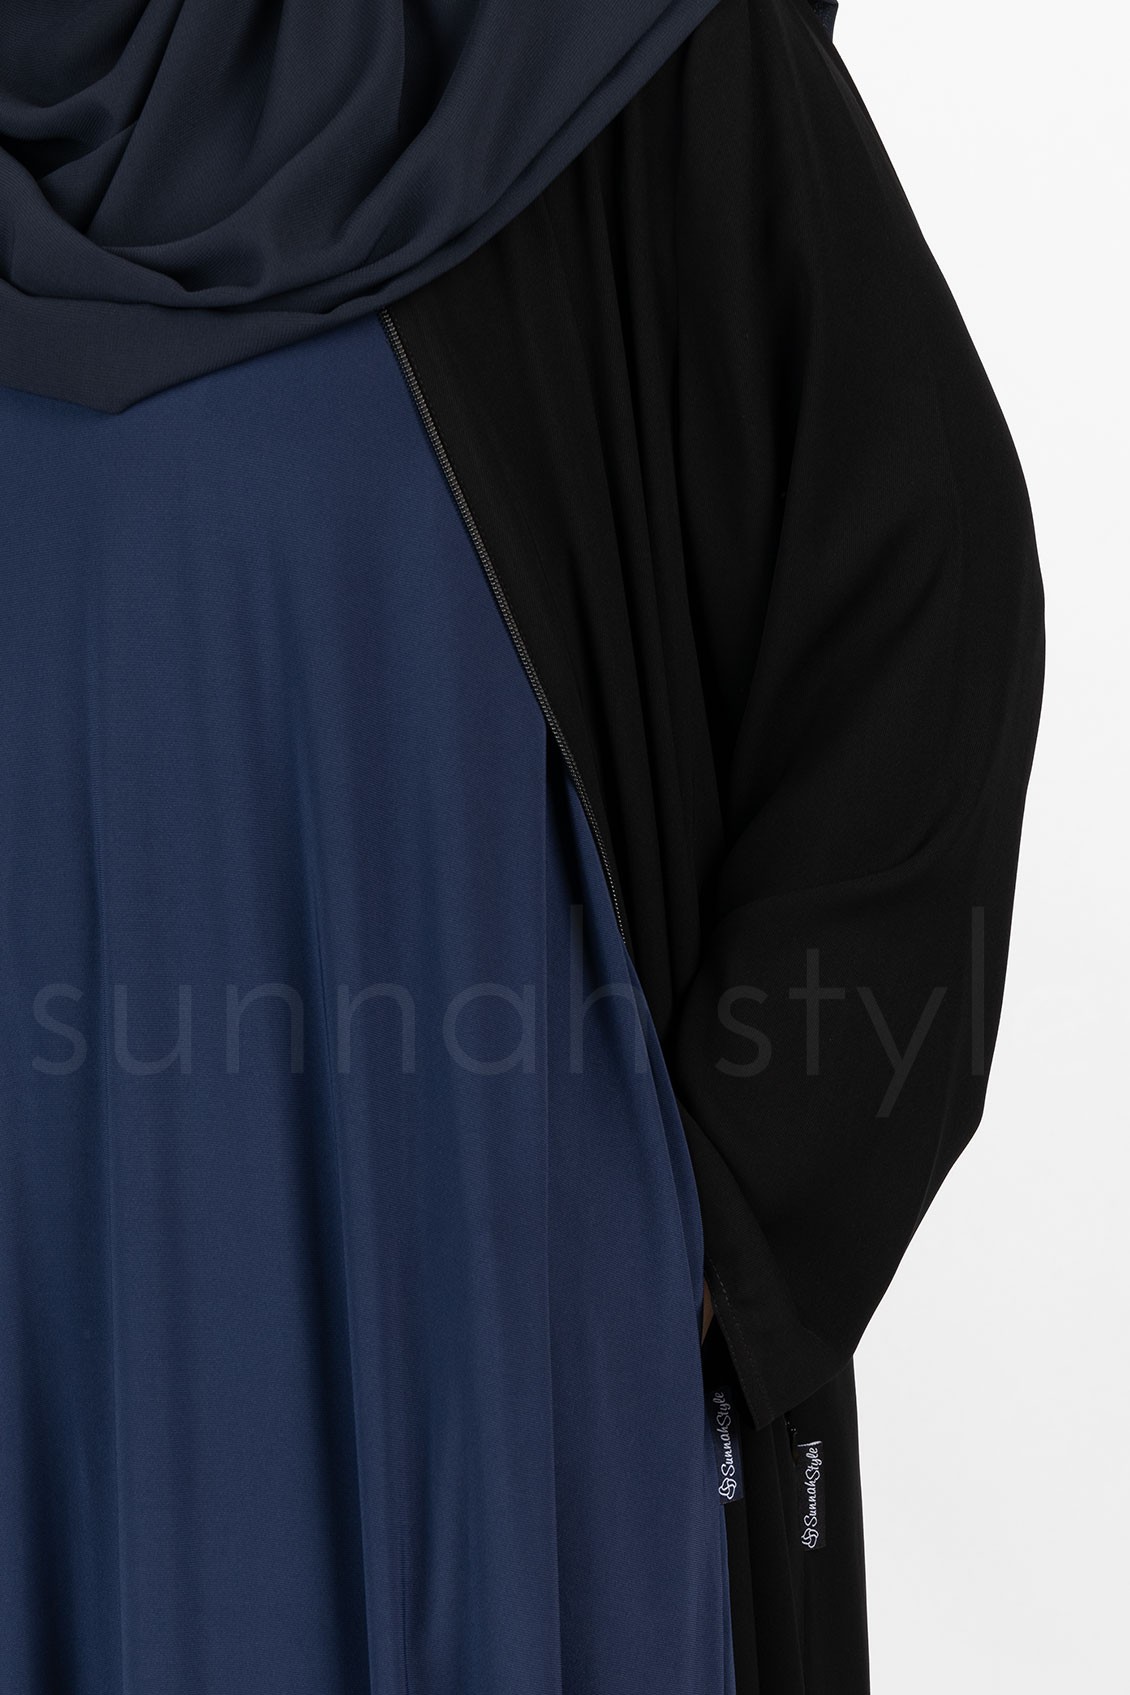 Sunnah Style Sleeveless Jersey Abaya Navy Blue